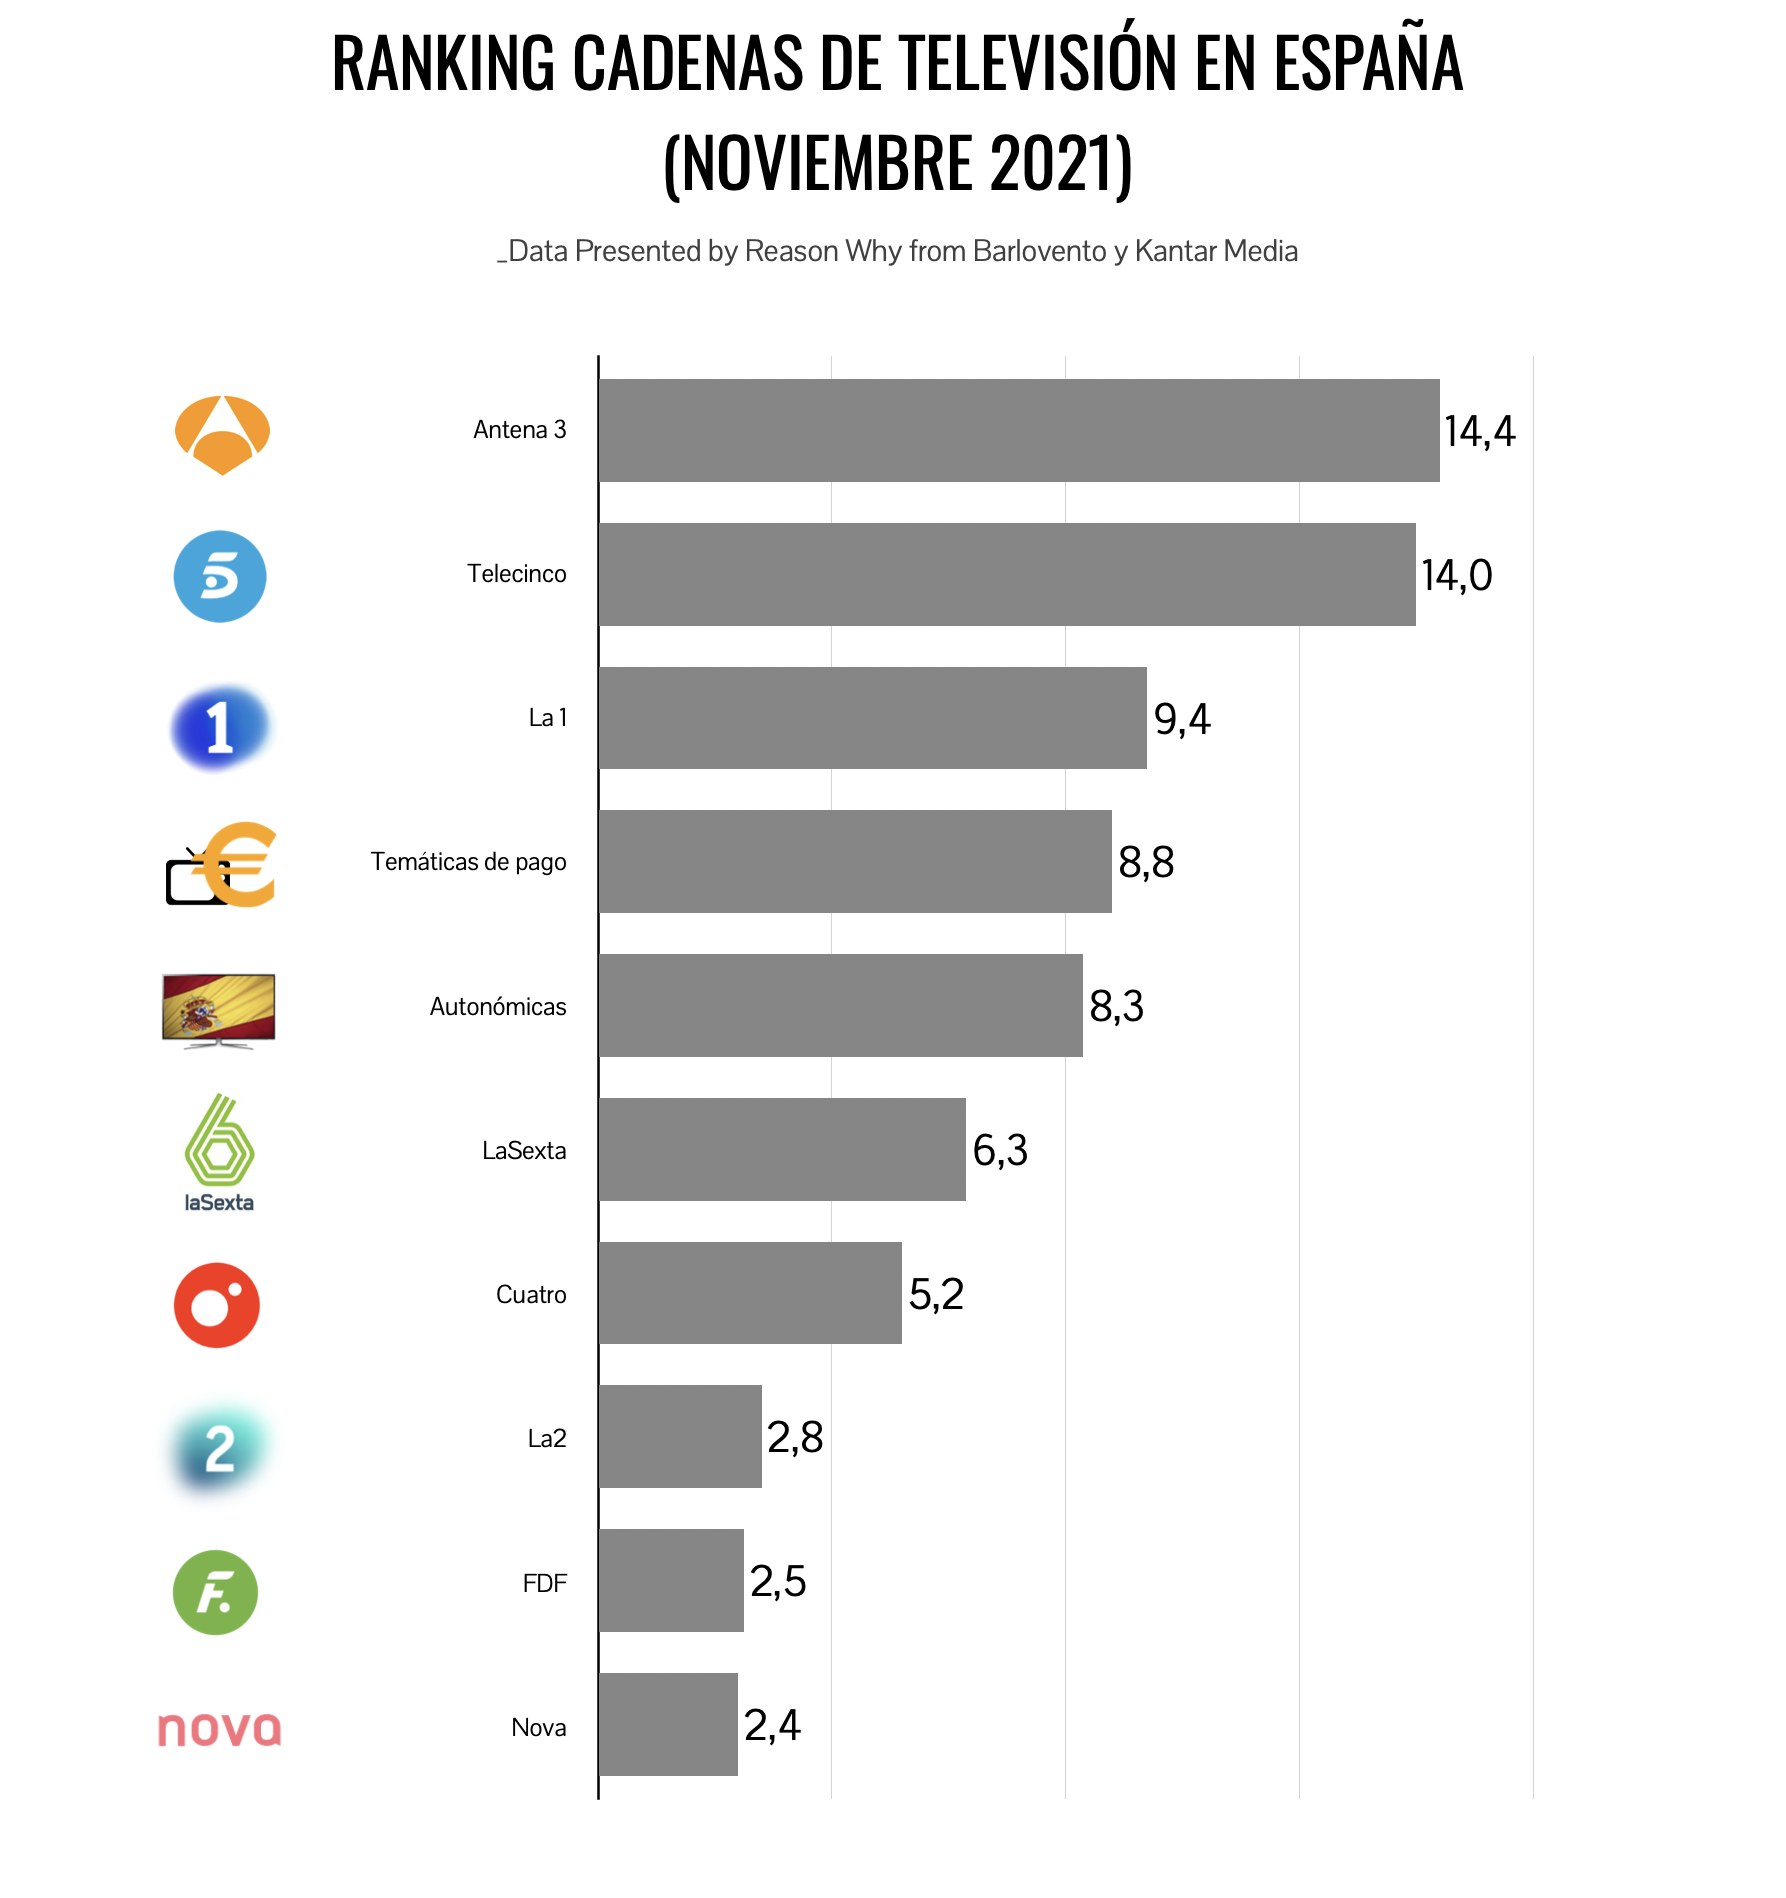 Ranking de las cadenas de TV más vistas en noviembre